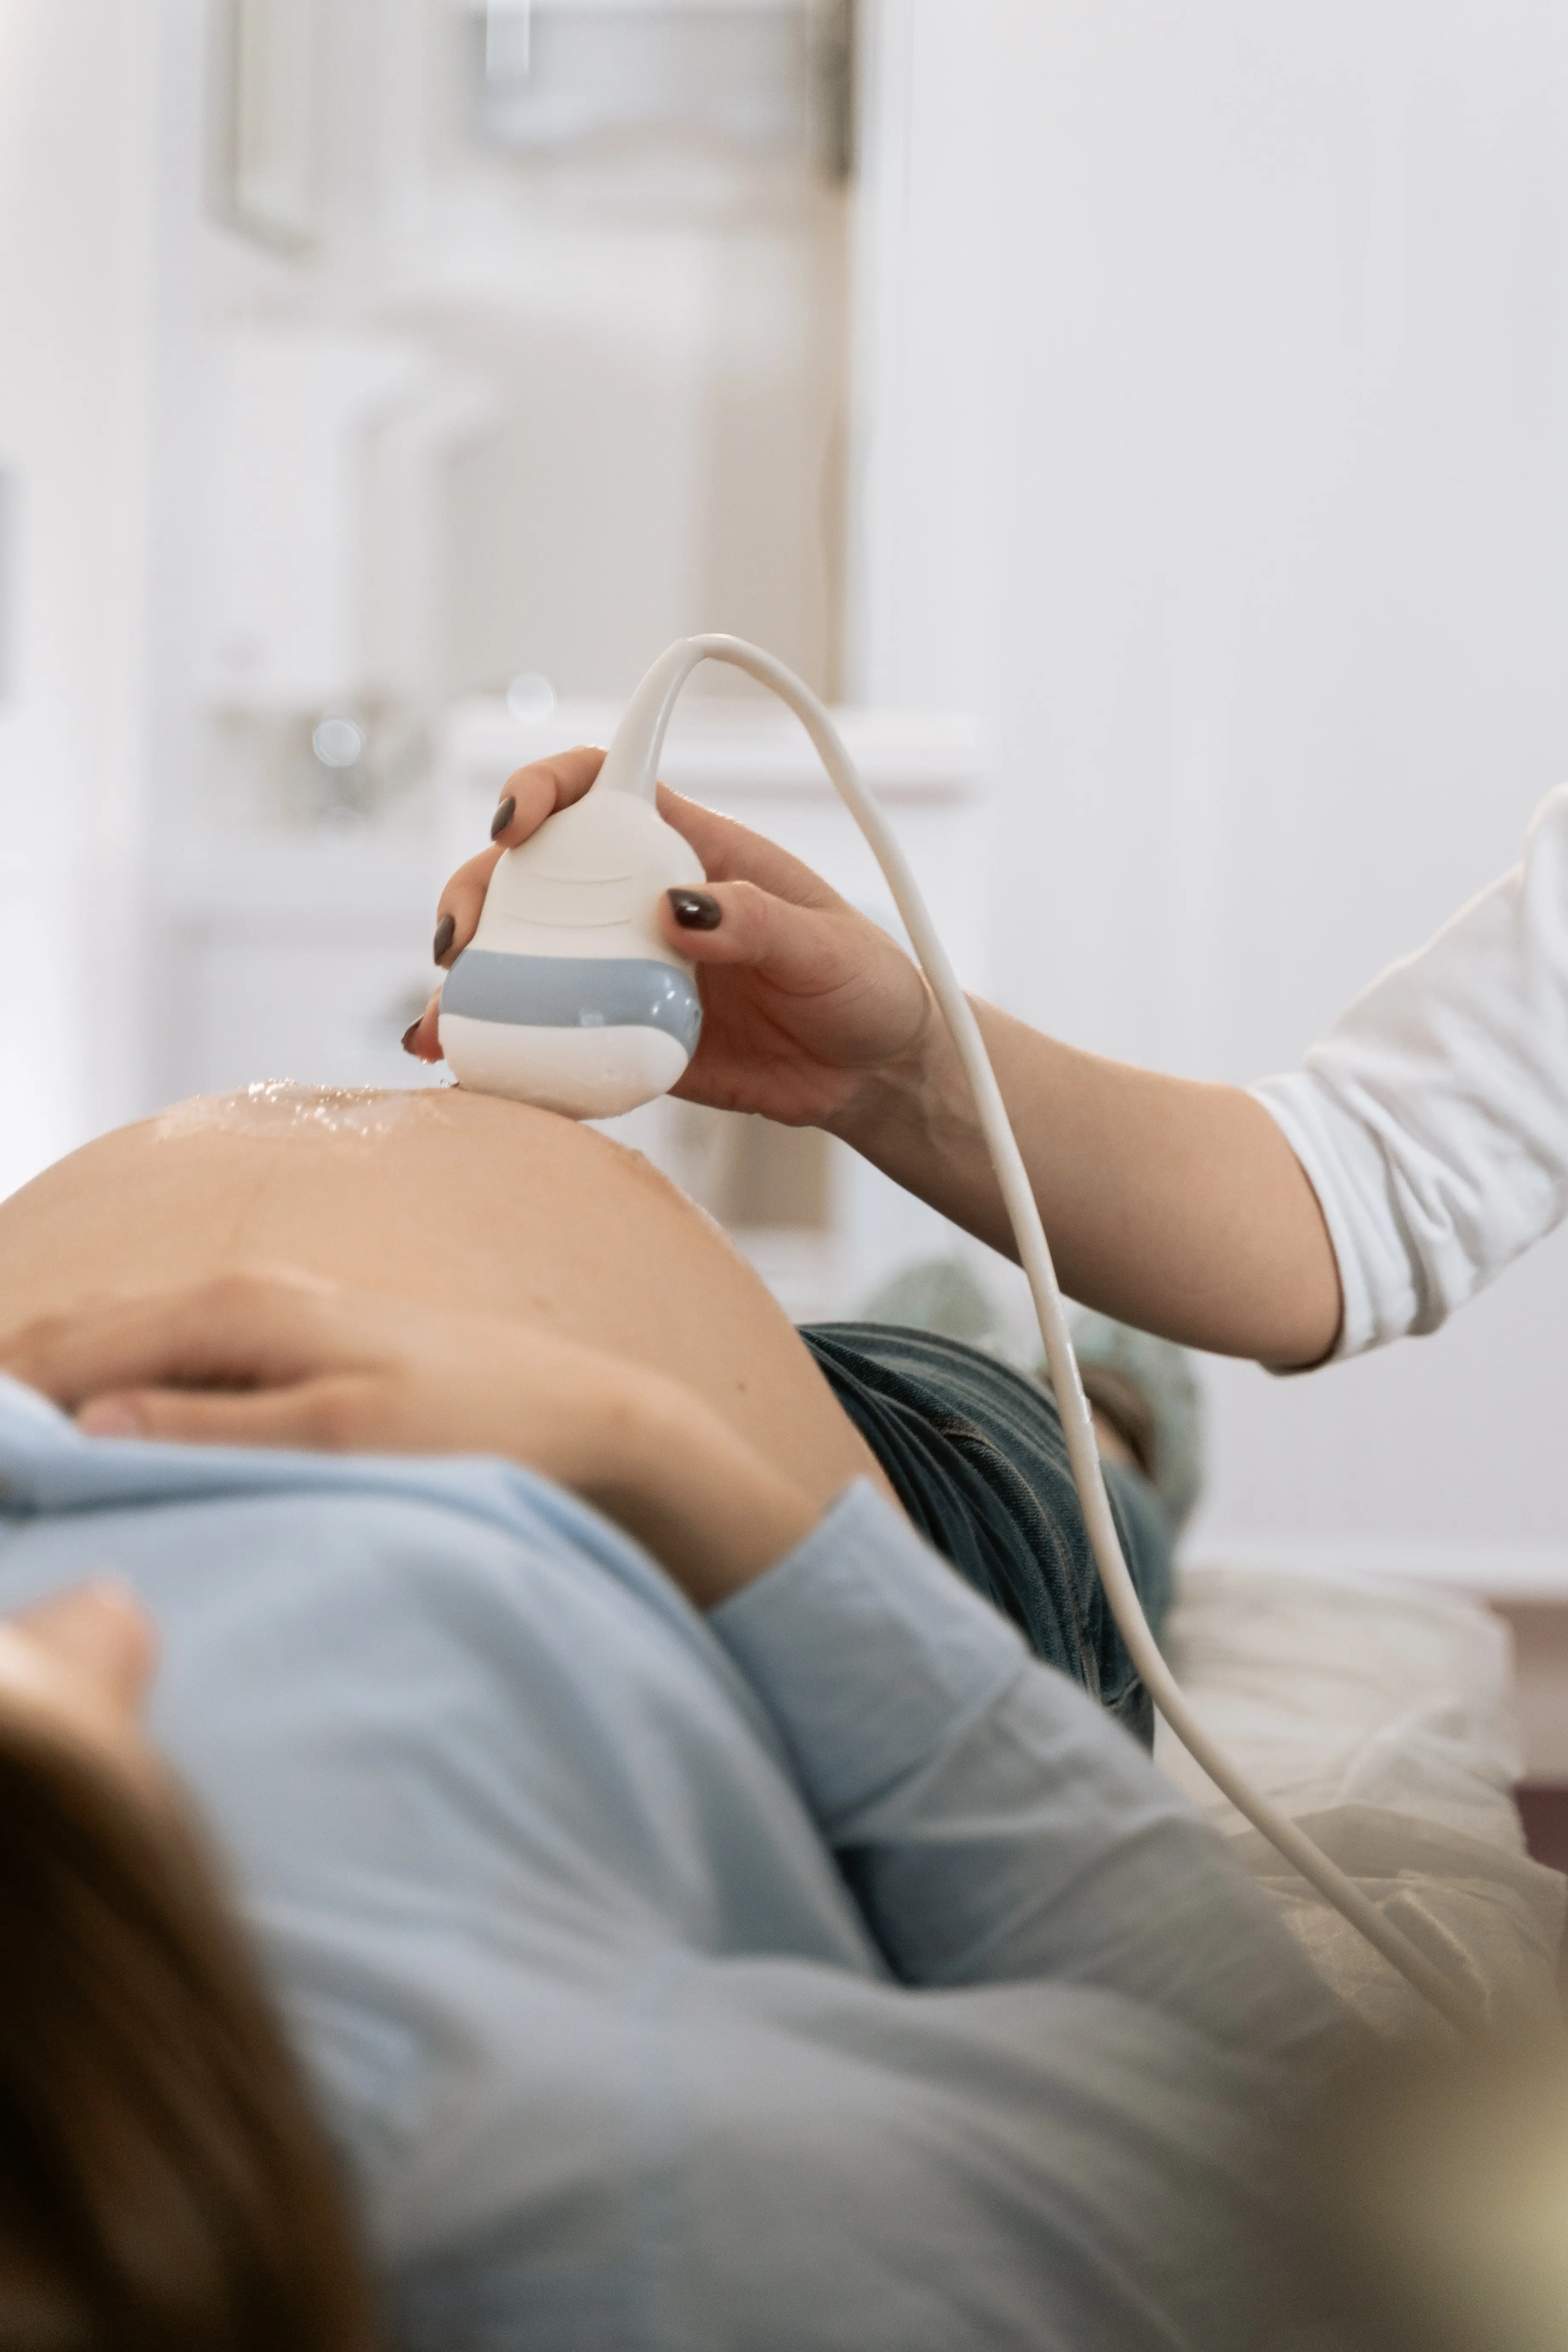 Zwangere vrouw wordt onderzocht met een echoapparaat 